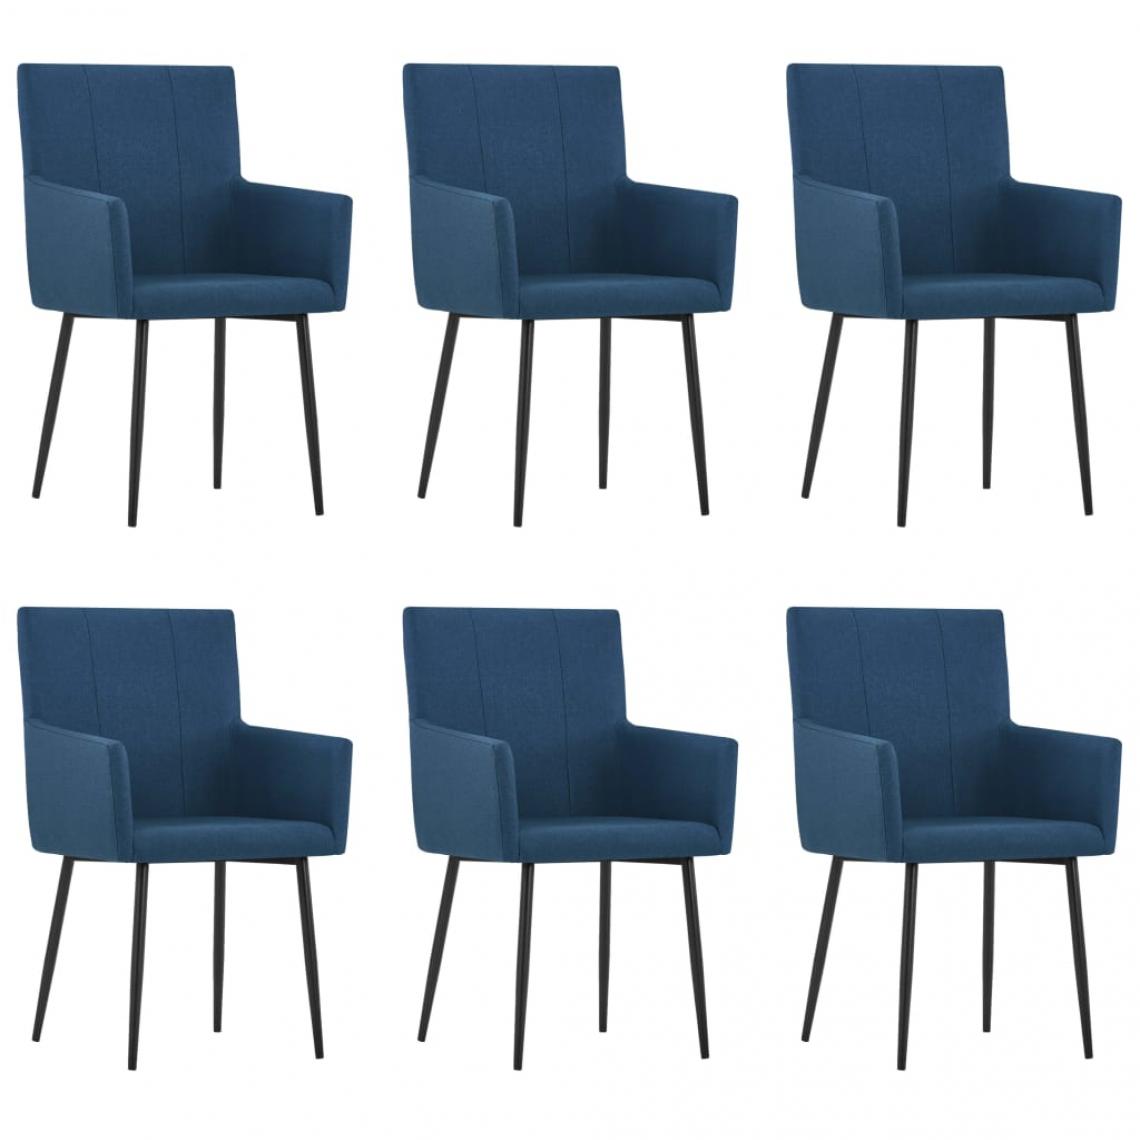 Decoshop26 - Lot de 6 chaises de salle à manger cuisine avec accoudoirs design moderne tissu bleu CDS022123 - Chaises